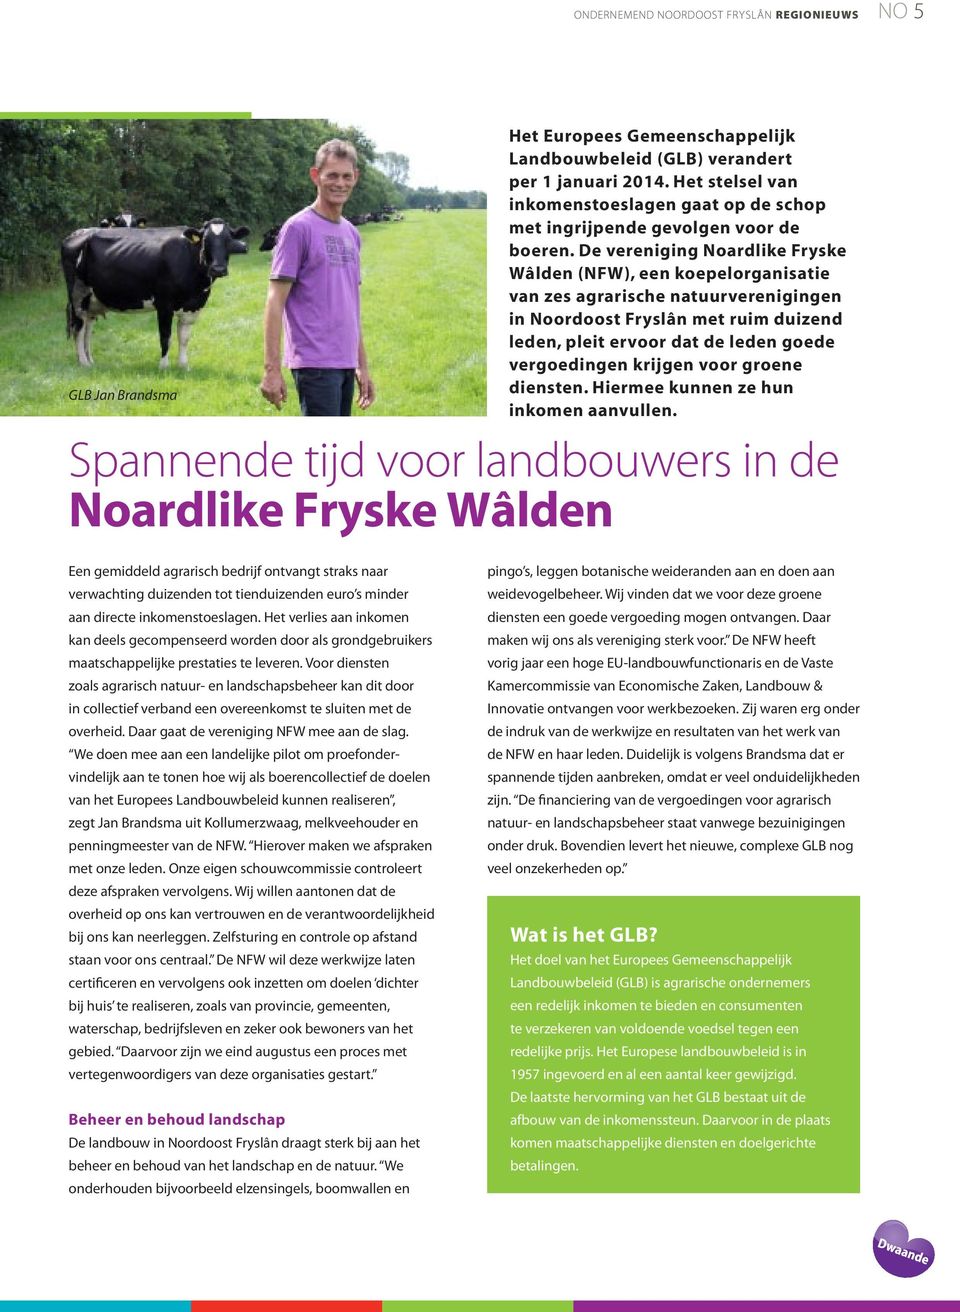 De vereniging Noardlike Fryske Wâlden (NFW), een koepelorganisatie van zes agrarische natuurverenigingen in Noordoost Fryslân met ruim duizend leden, pleit ervoor dat de leden goede vergoedingen